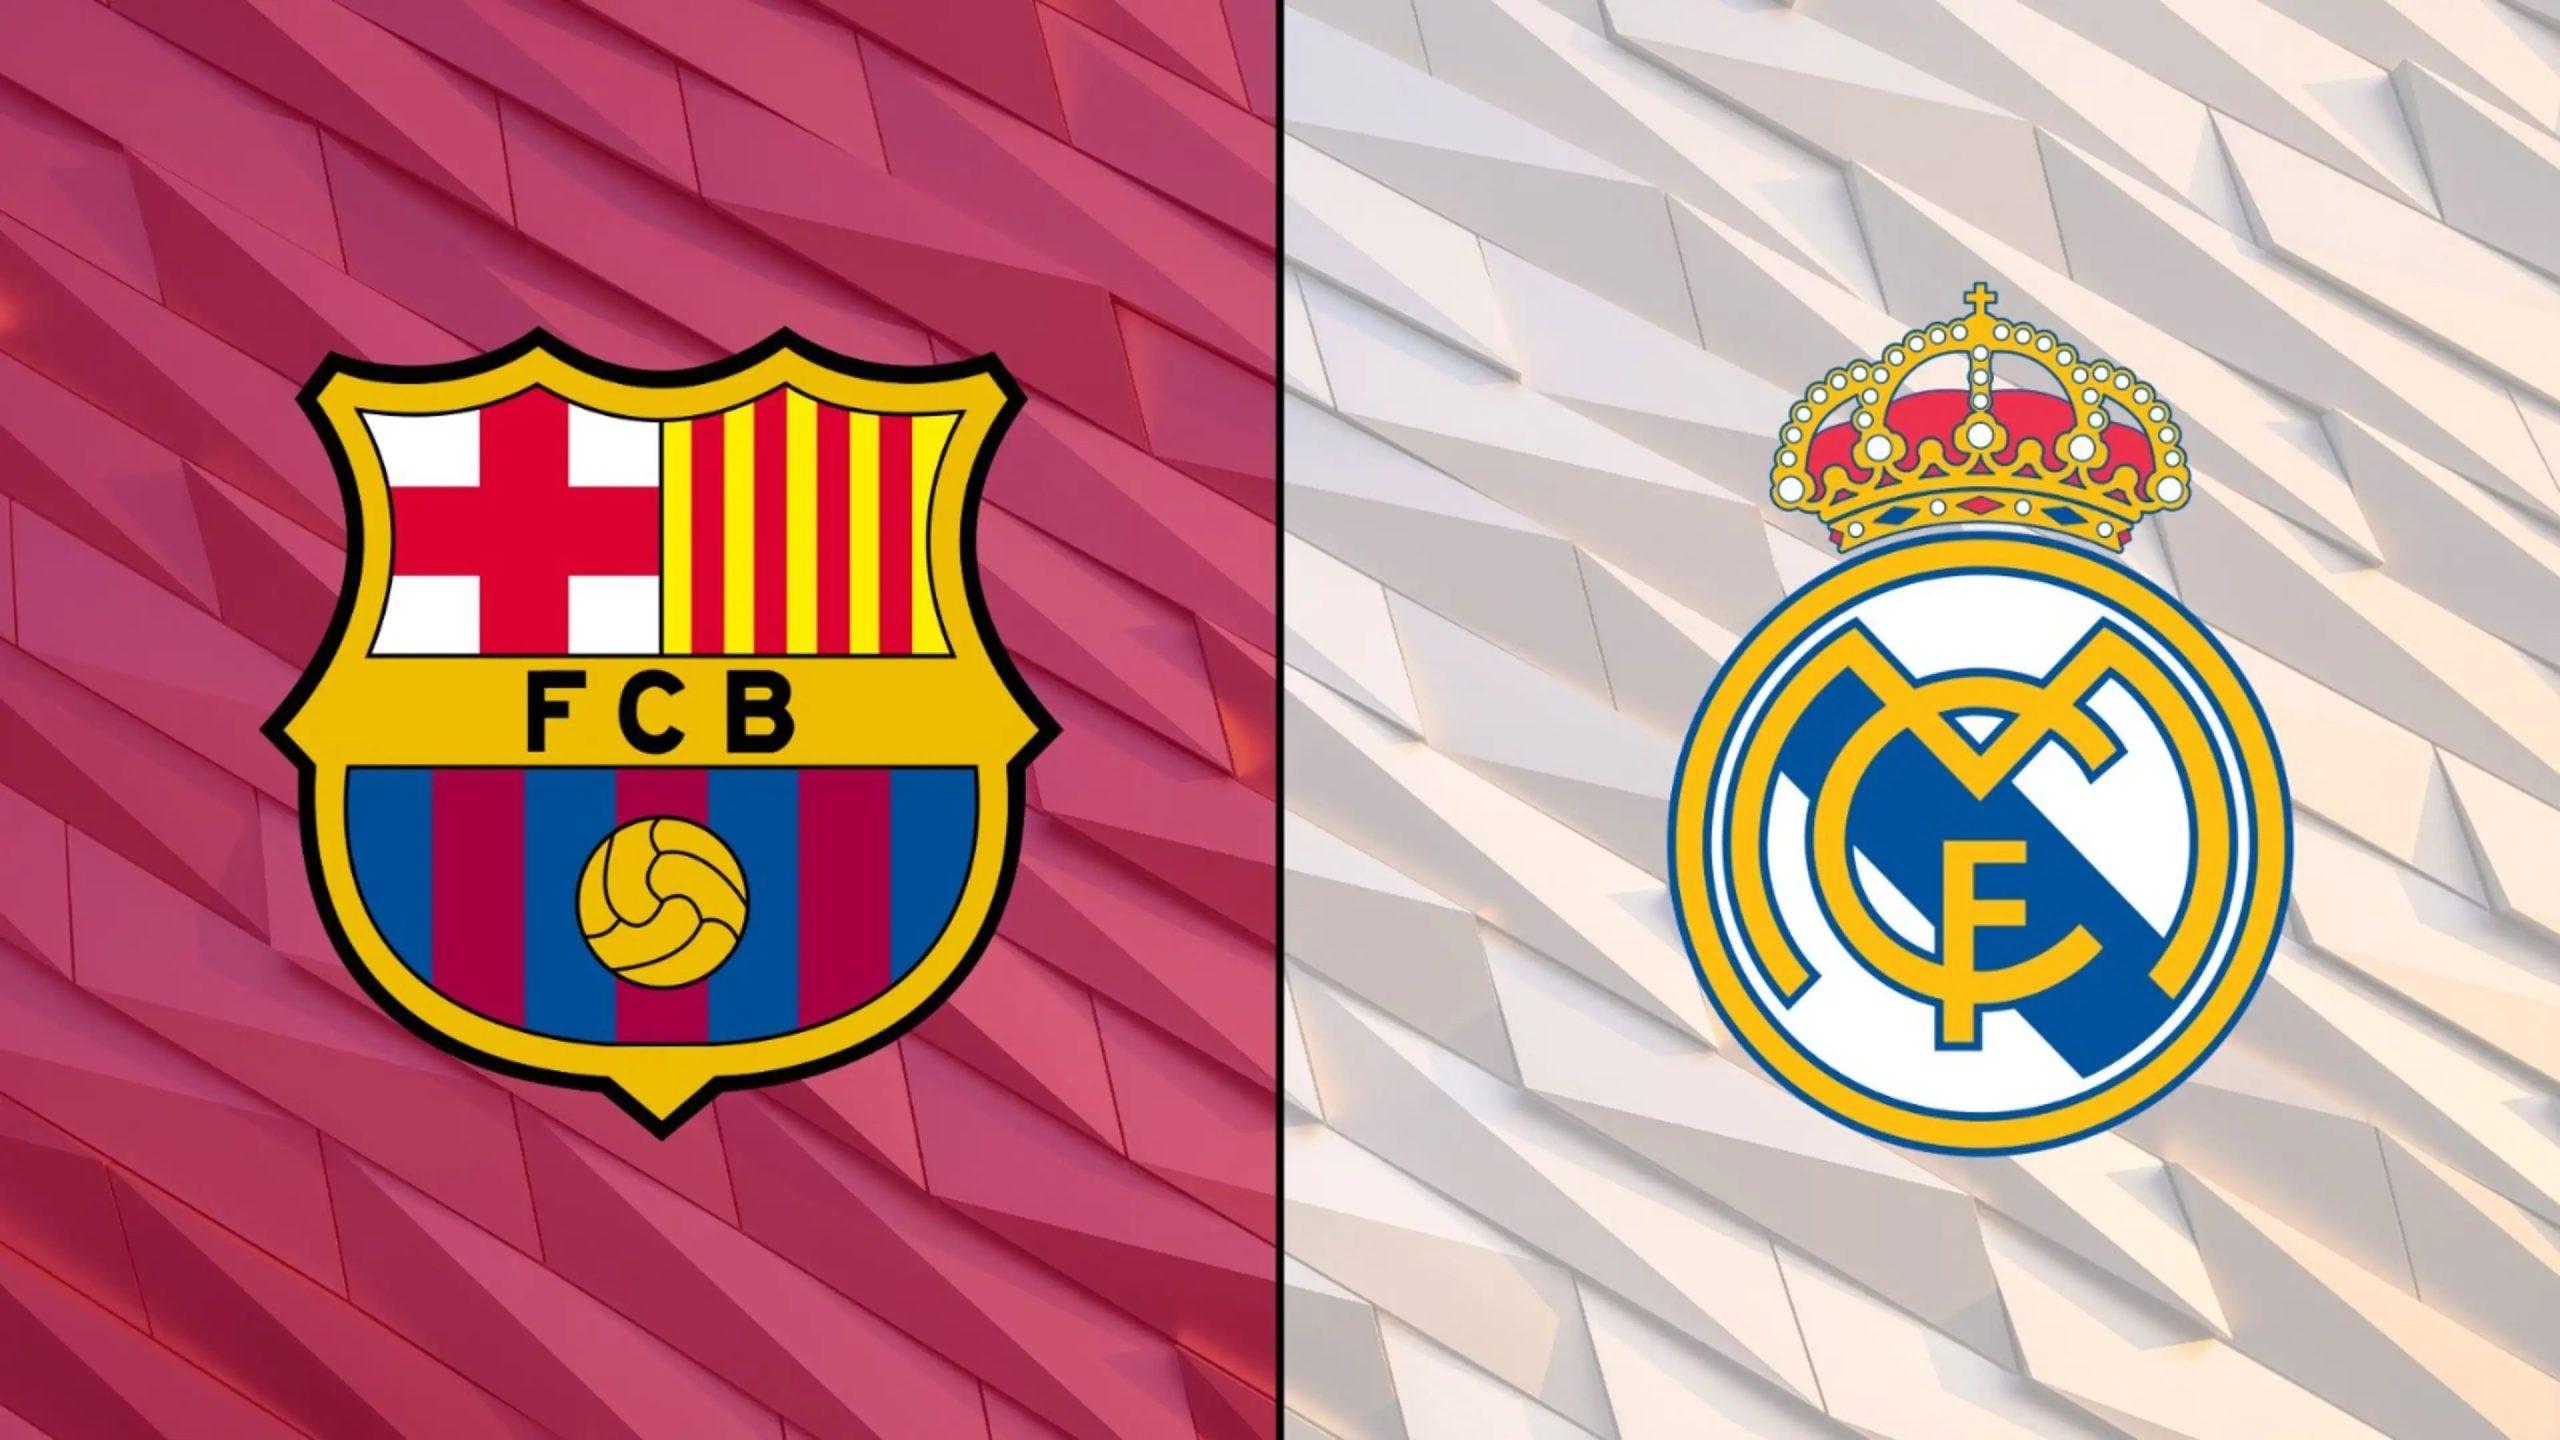 Barcelona và Real Madrid, cặp kình địch nổi tiếng nhất trong bóng đá (Ảnh: Internet)